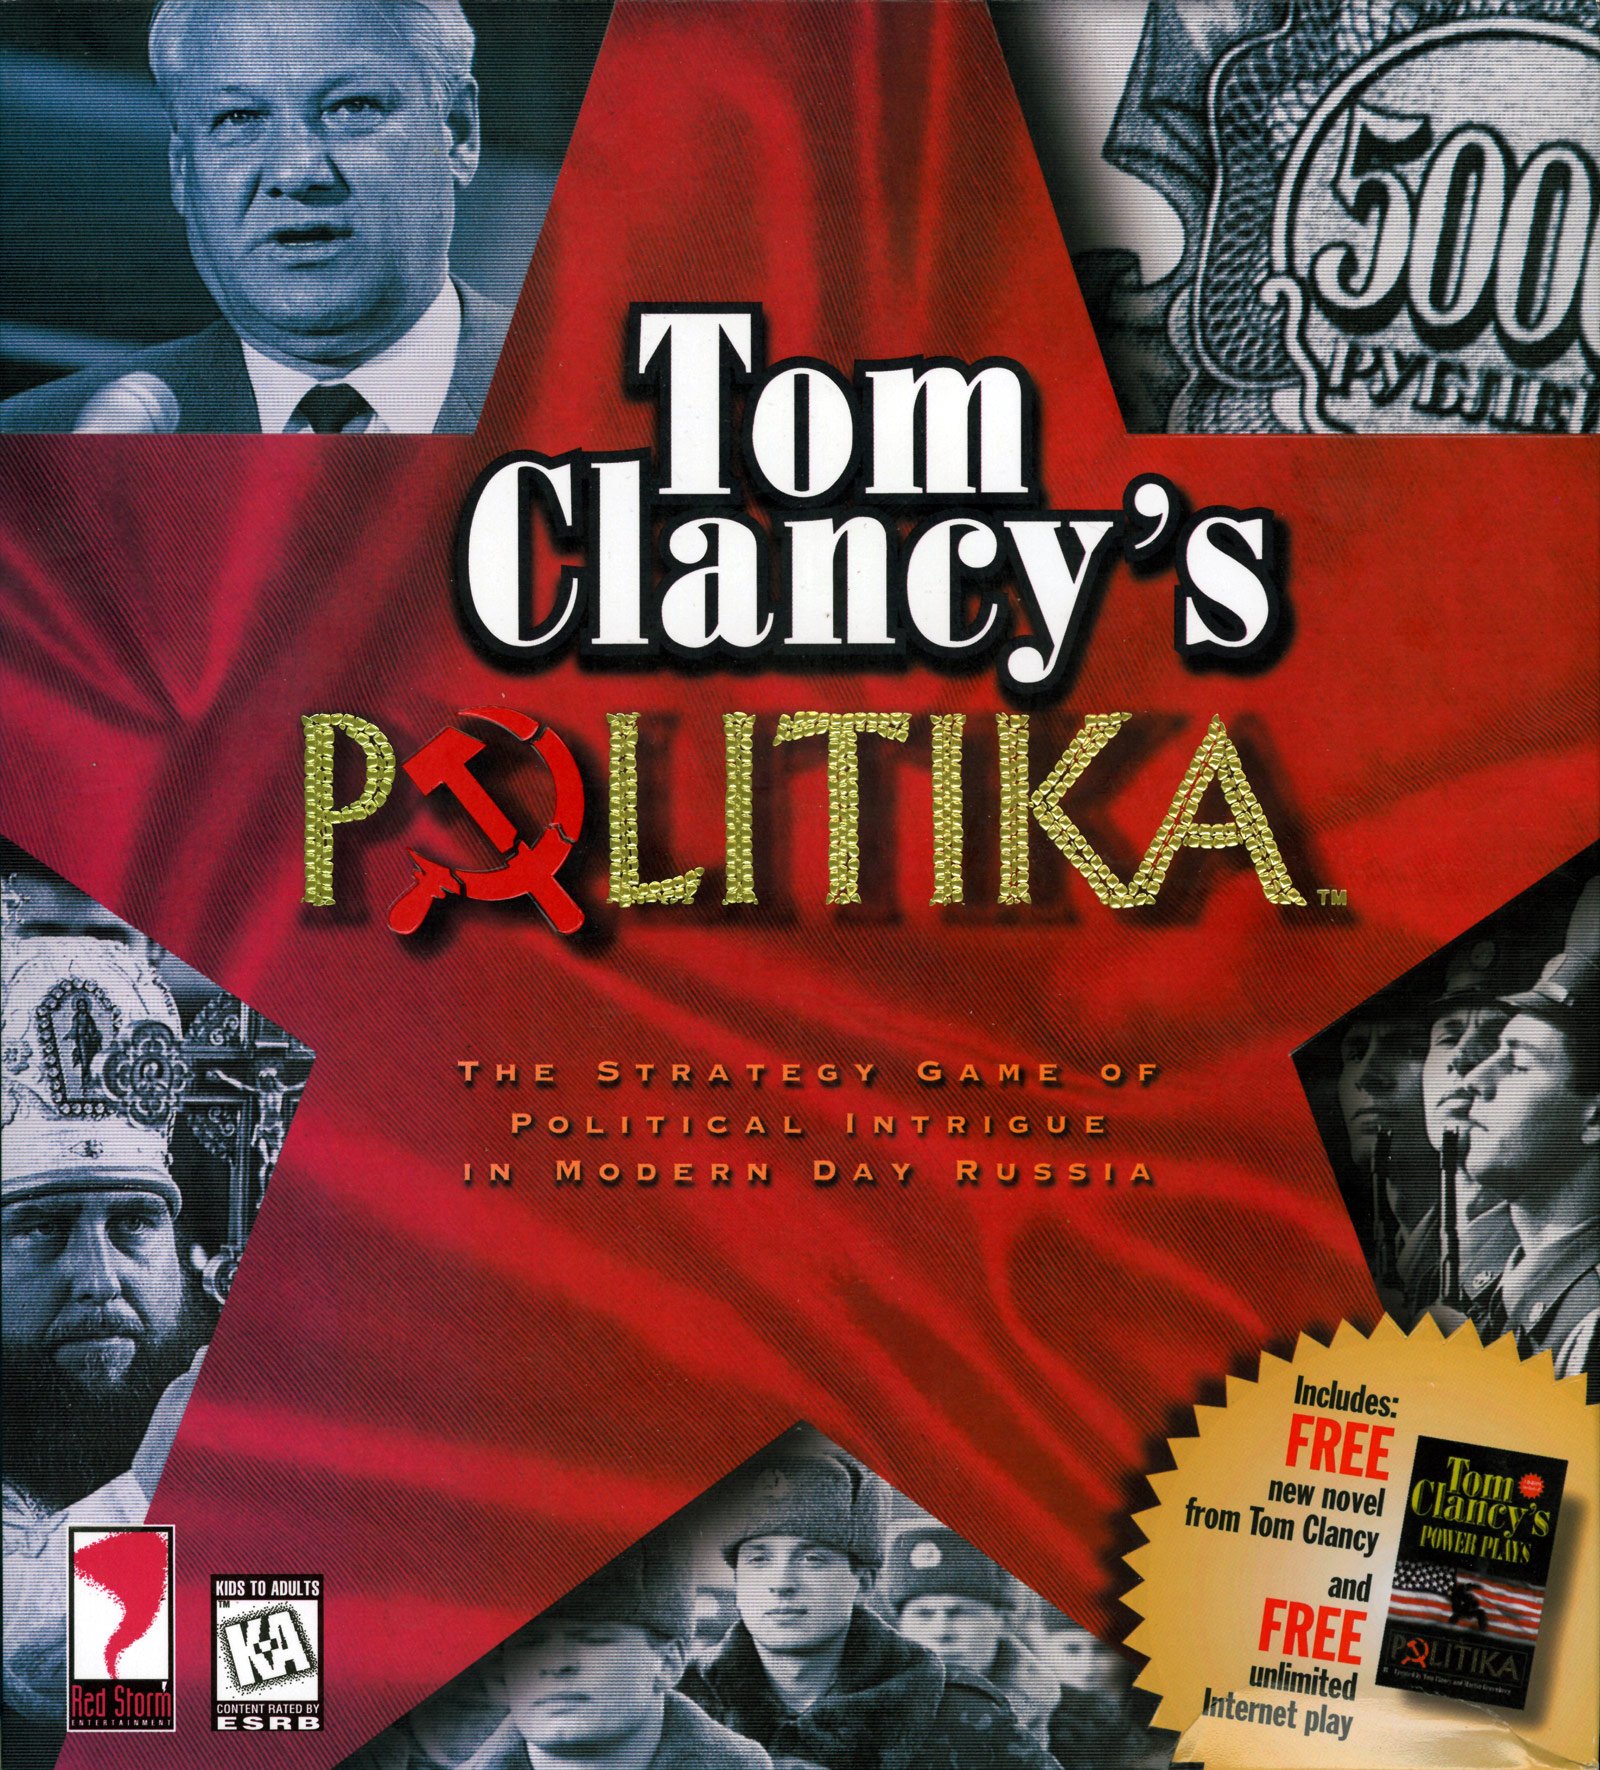 Image of Tom Clancy's Politika